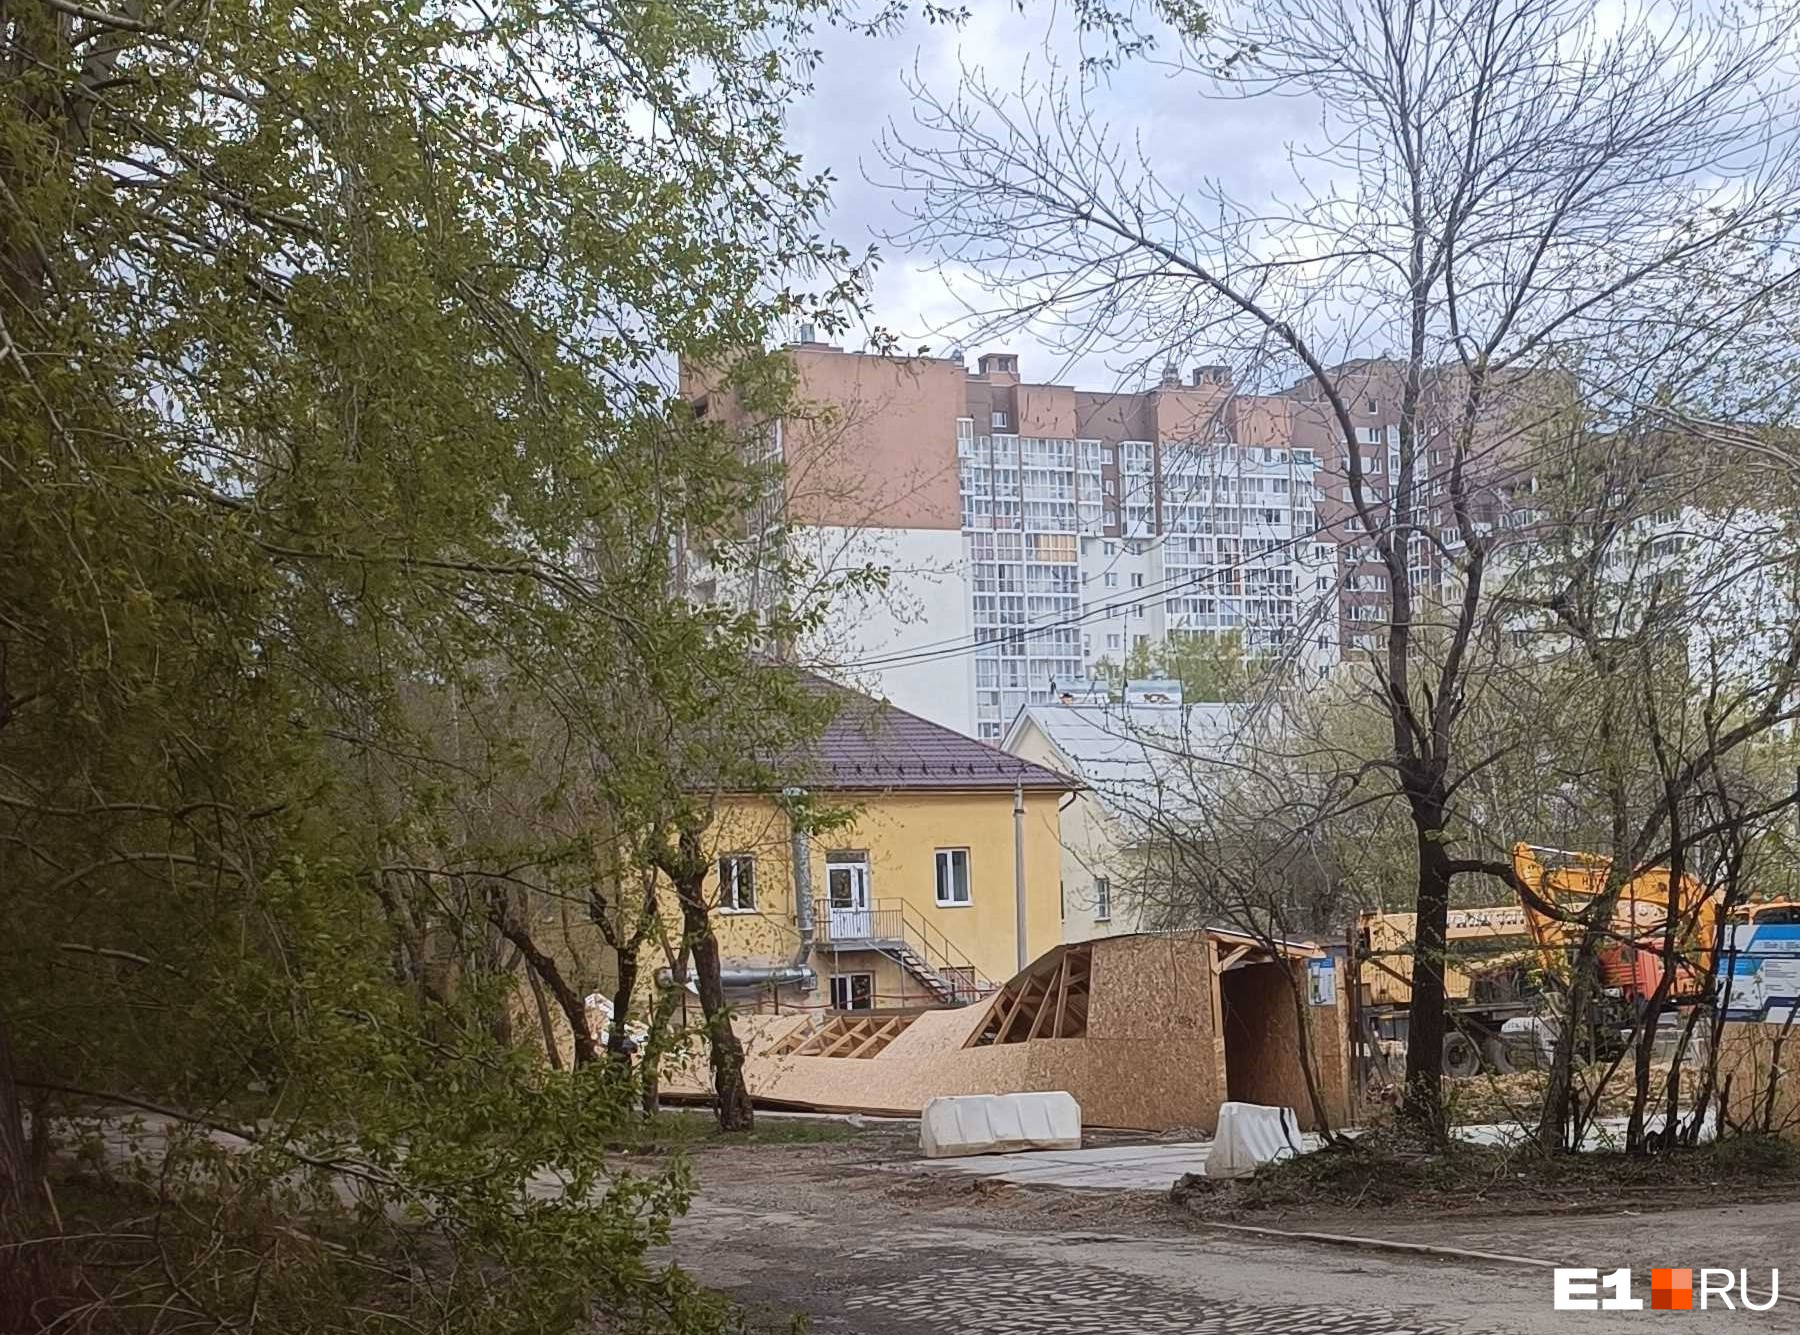 Крыши падают на машины, сносит столбы с проводами: Екатеринбург захватил шторм